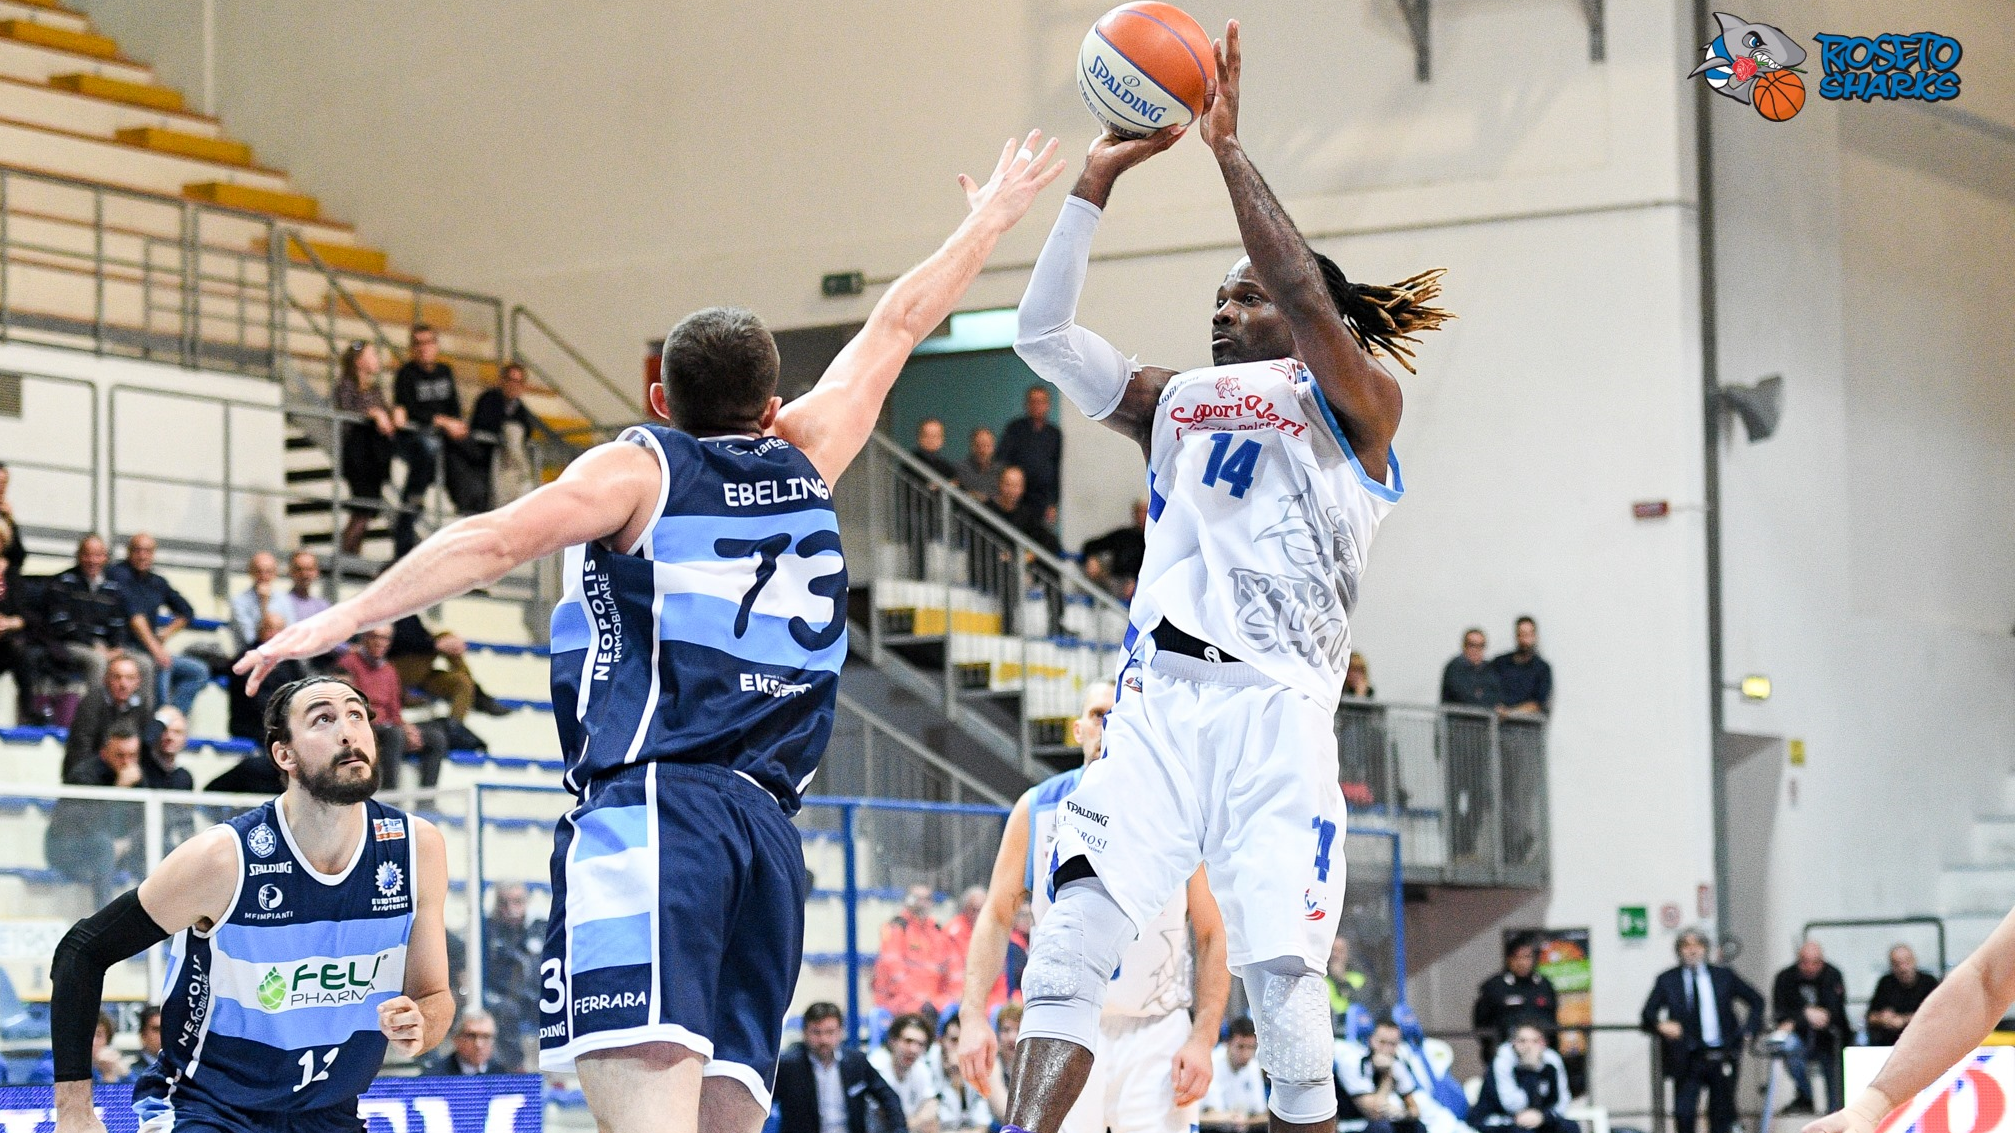 Roseto Basket.Prima di ritorno:gli Sharks sconfitti ( 84-61) a Udine